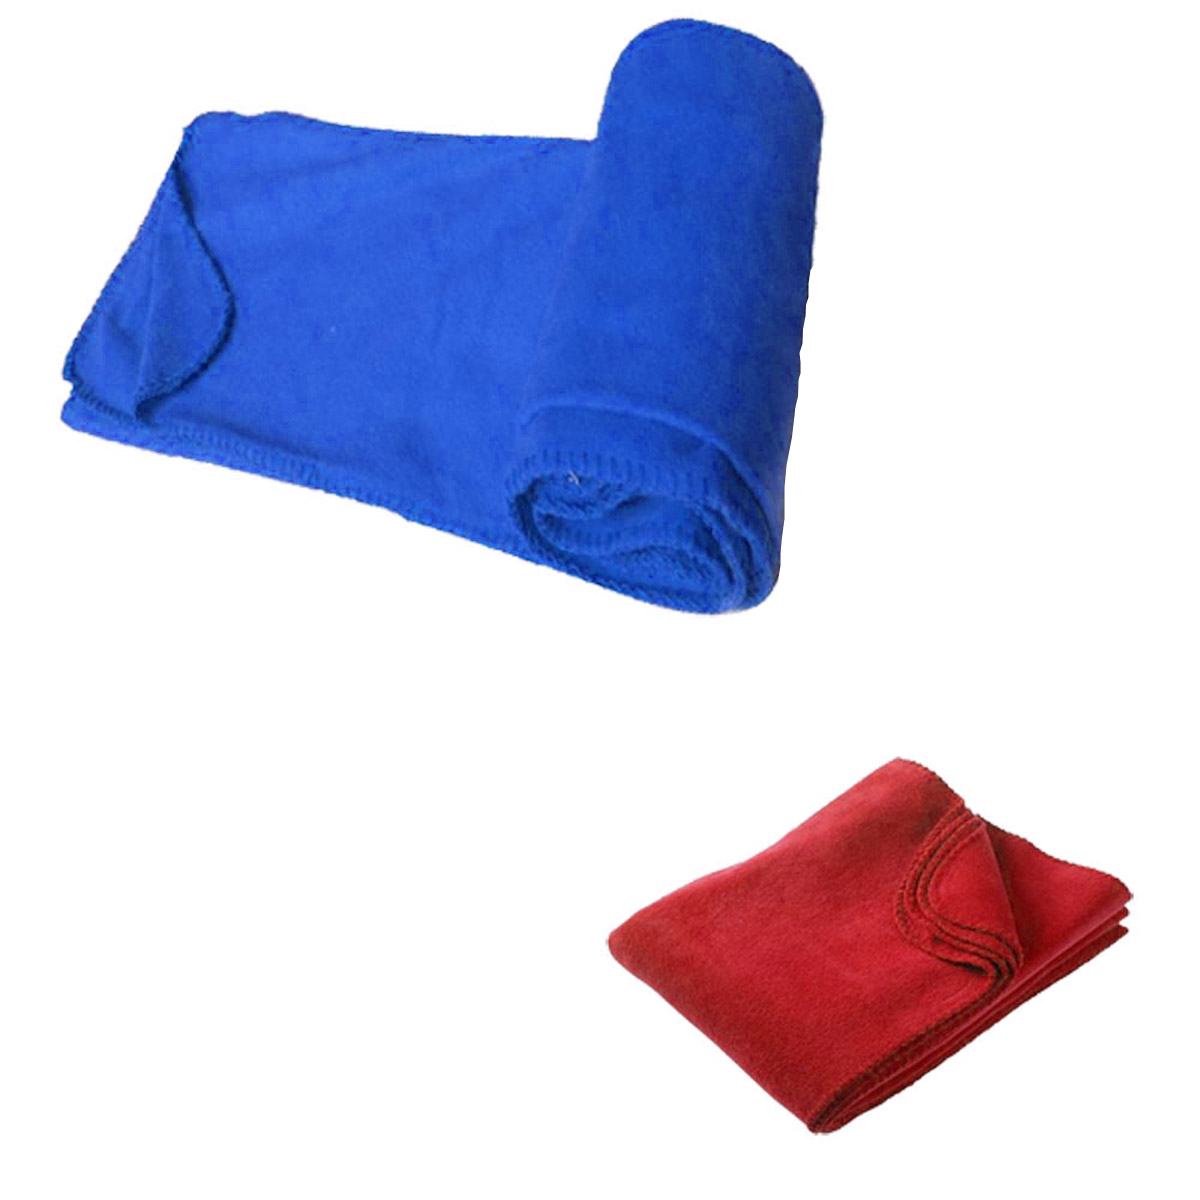 GL-AAD1029 50inch x 60inch Portable Fleece Throw Blanket